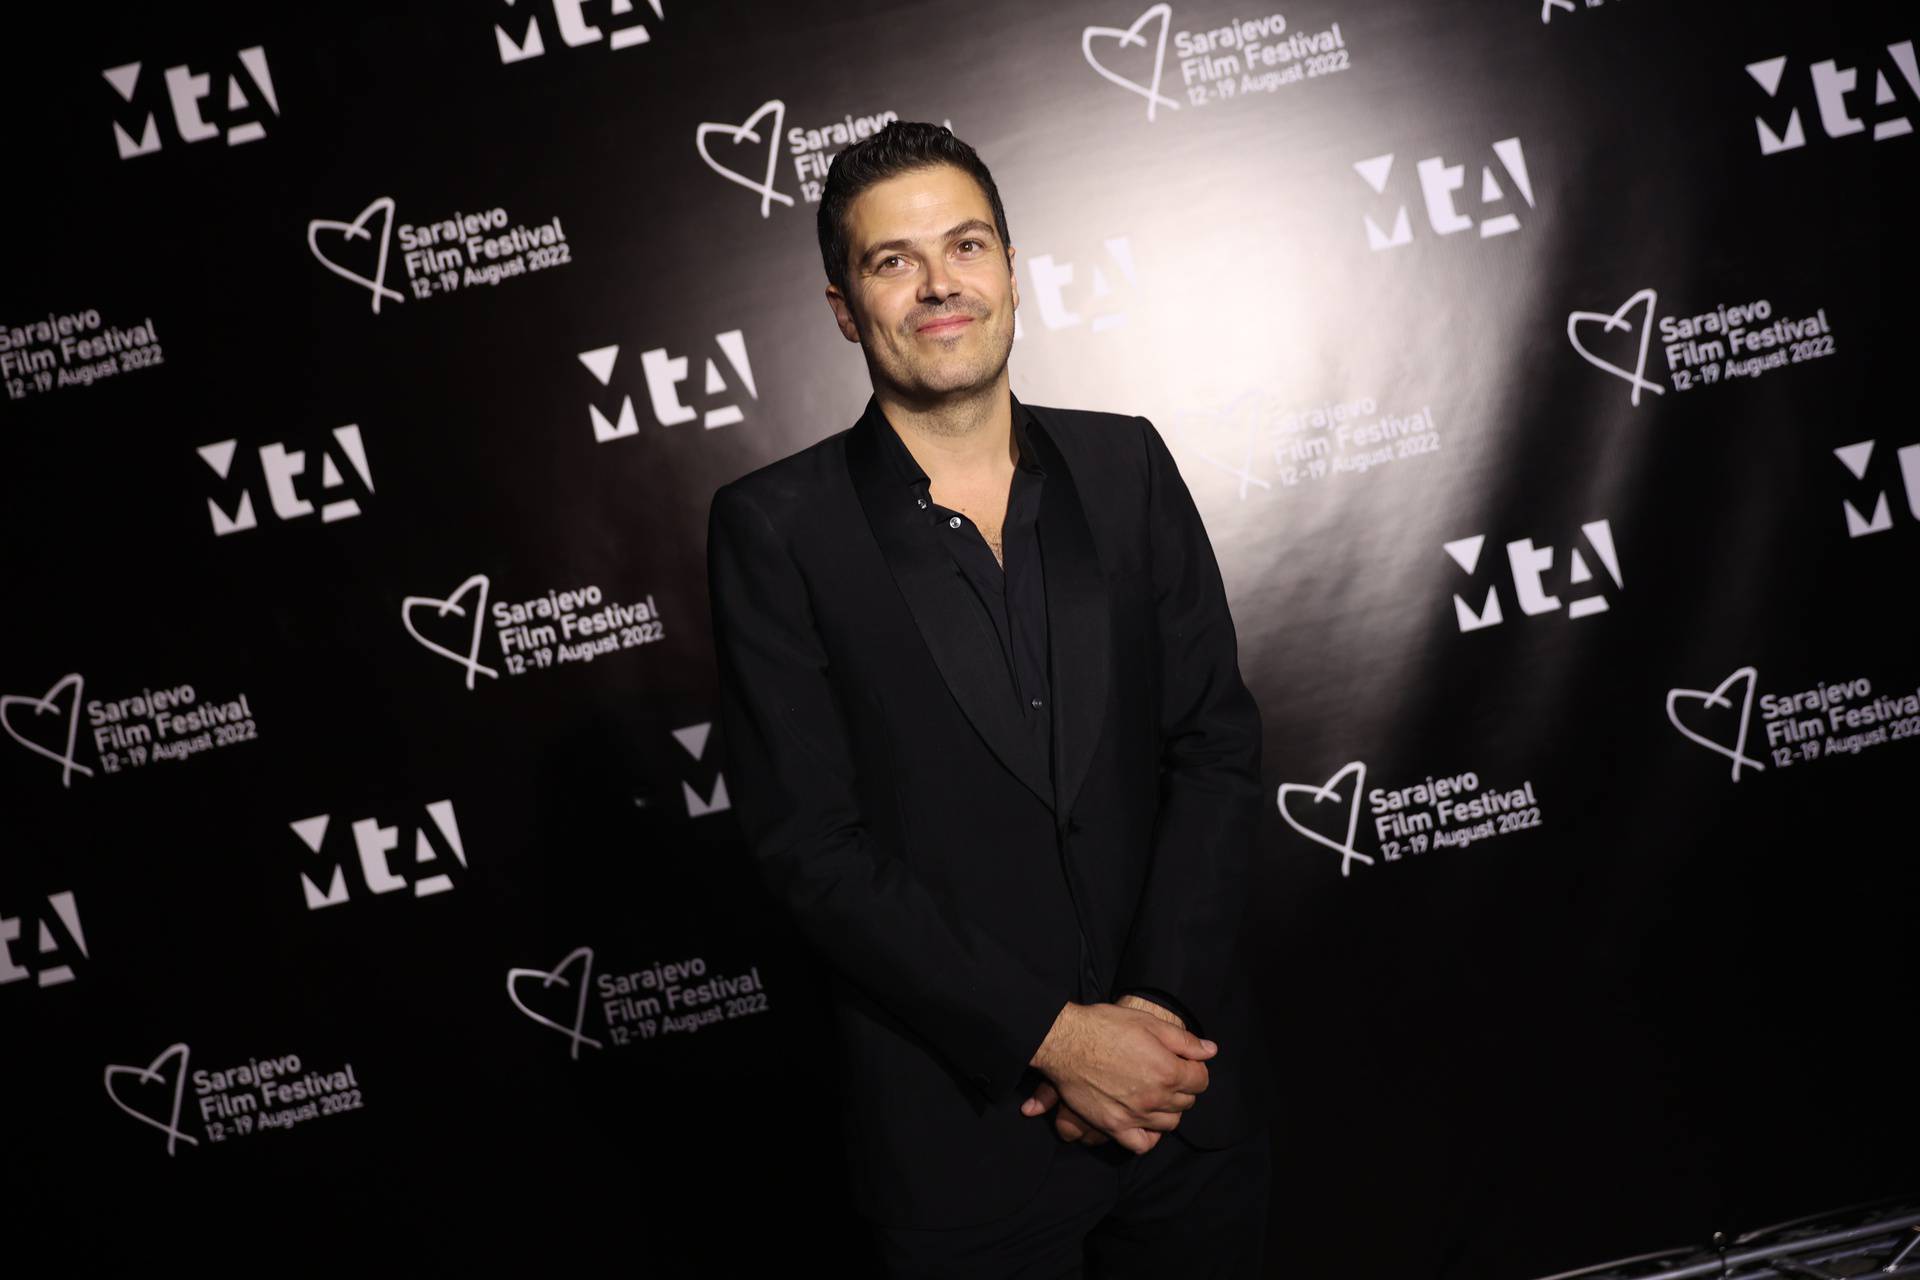 Počeo je Sarajevo Film Festival, redatelji Ruben Östlund i Sergei Loznitsa dobili su Počasna Srca